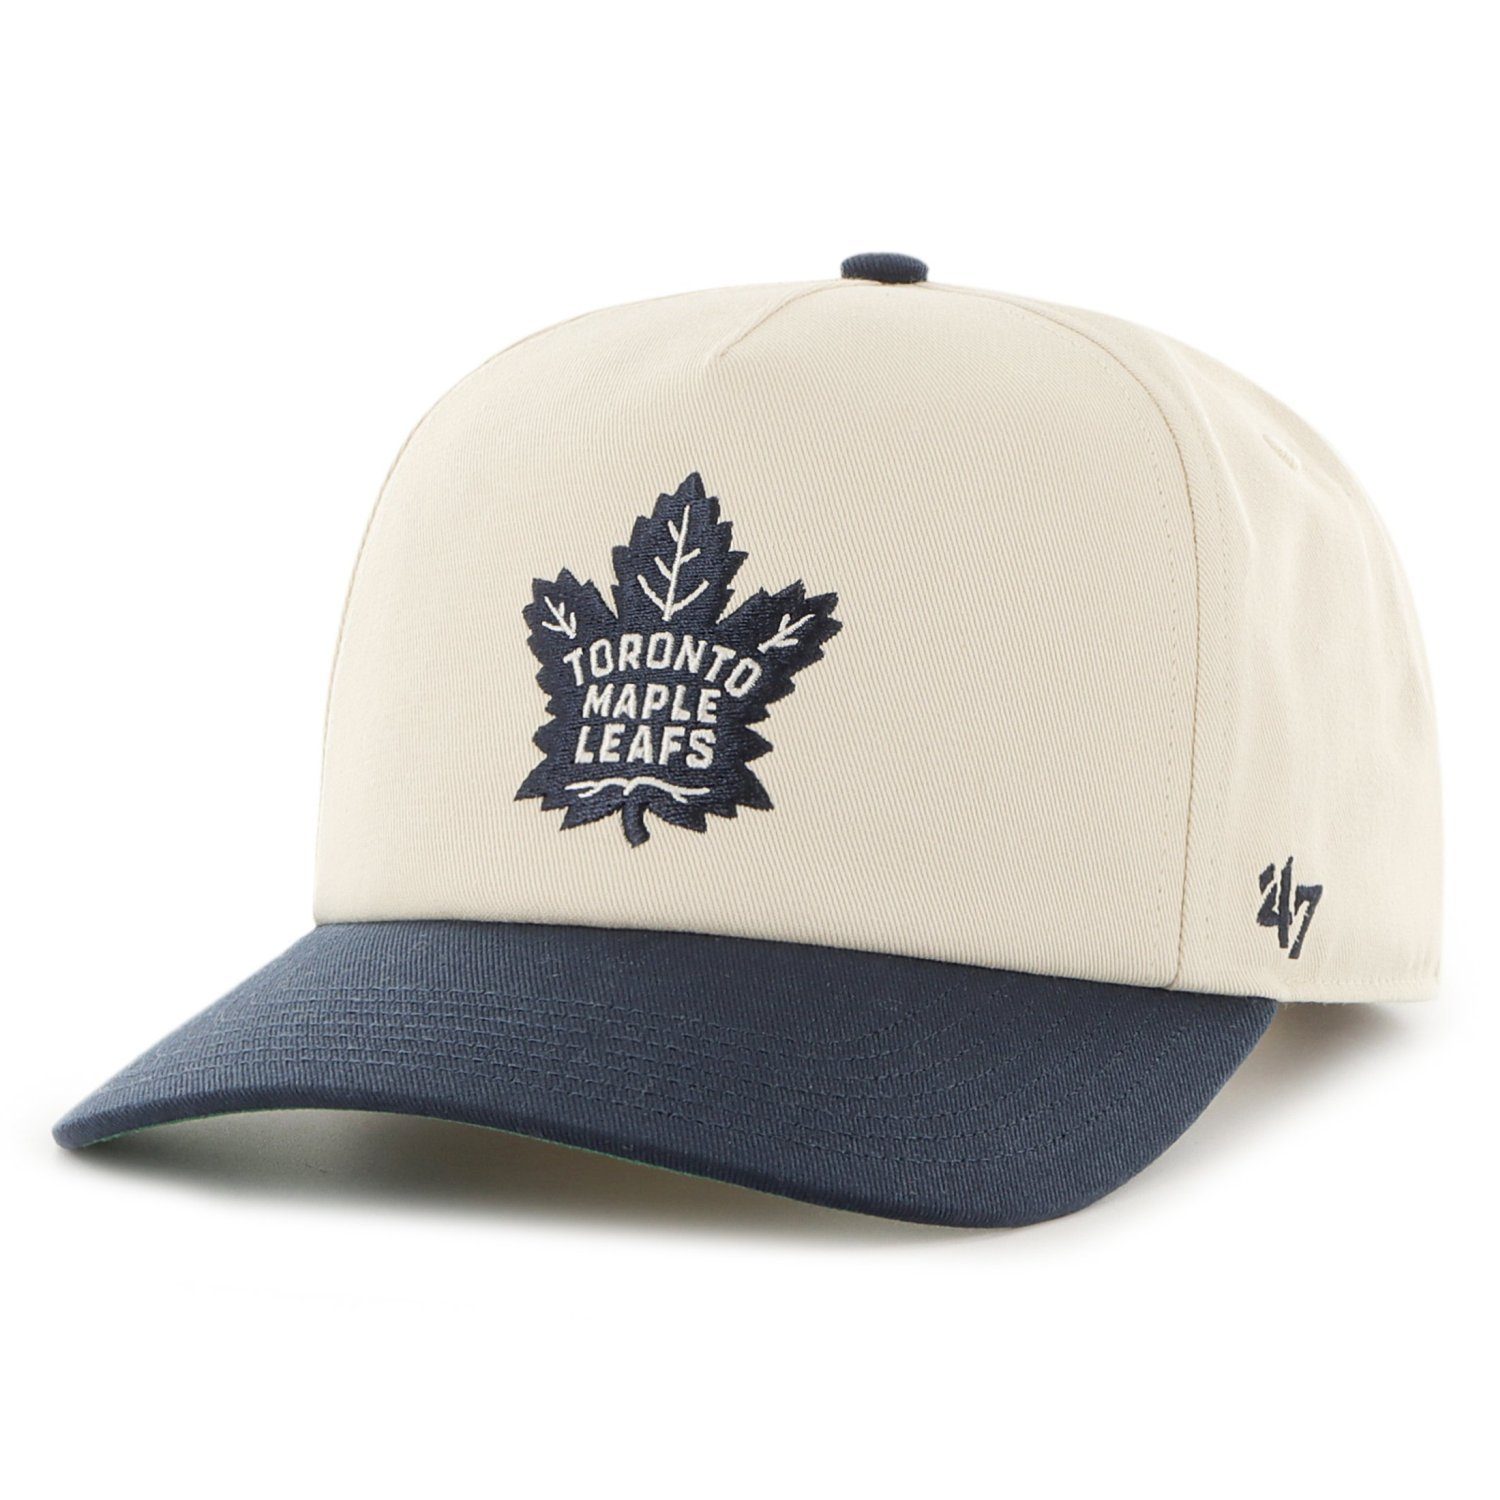 Herren Caps '47 Brand Snapback Cap Captain NANTASKET Toronto Maple Leafs